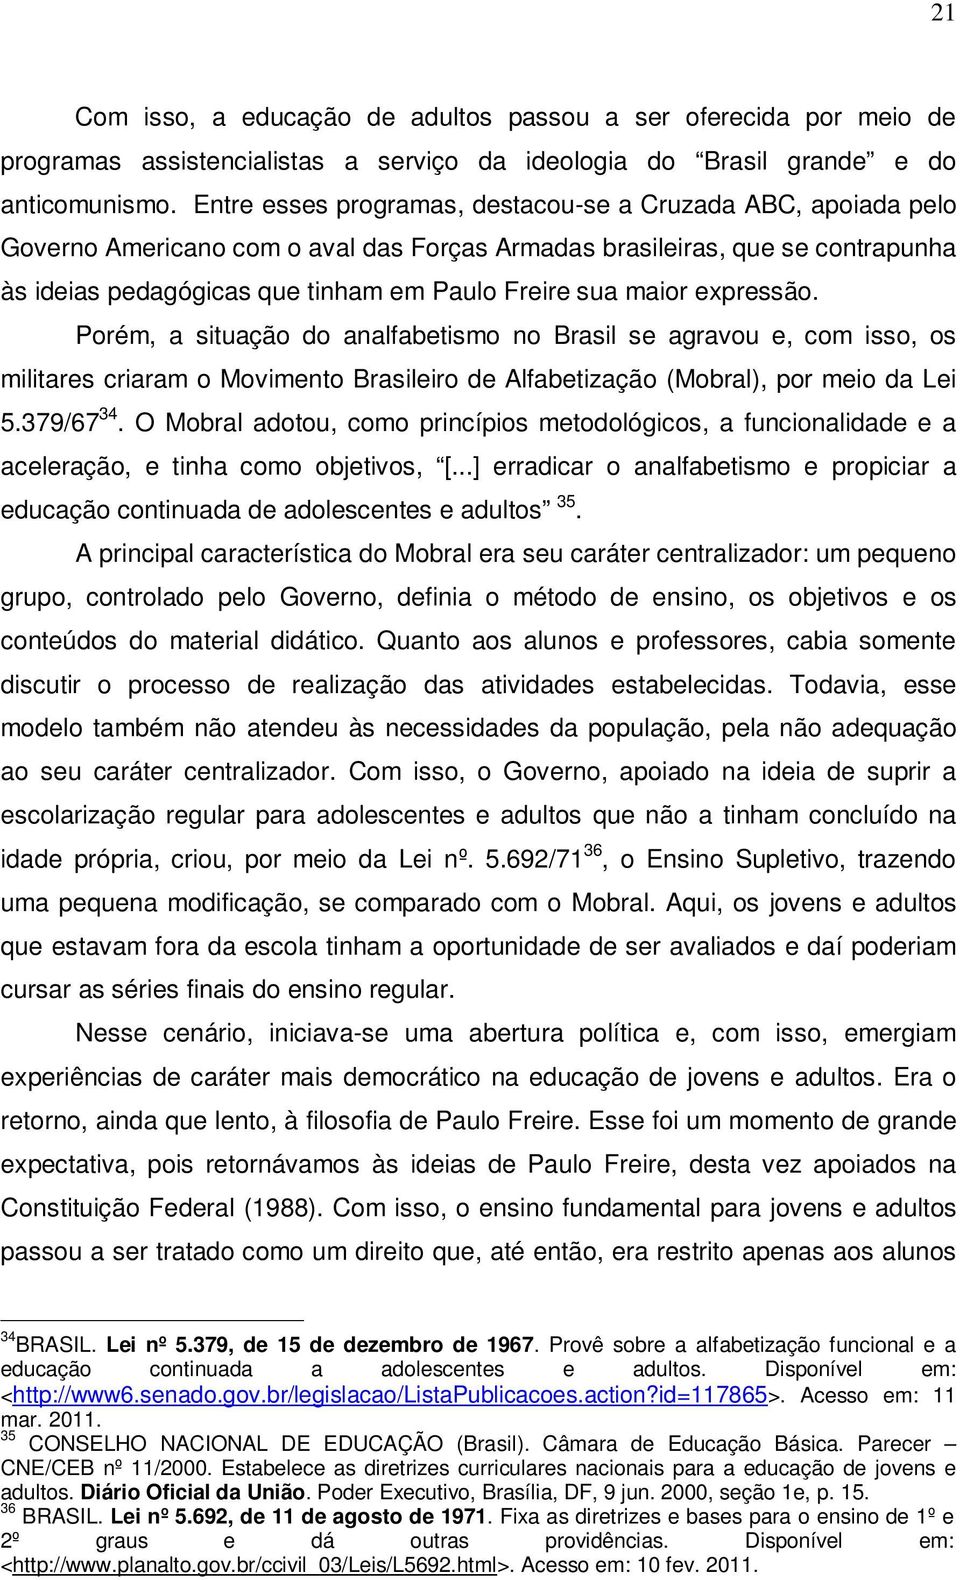 maior expressão. Porém, a situação do analfabetismo no Brasil se agravou e, com isso, os militares criaram o Movimento Brasileiro de Alfabetização (Mobral), por meio da Lei 5.379/67 34.